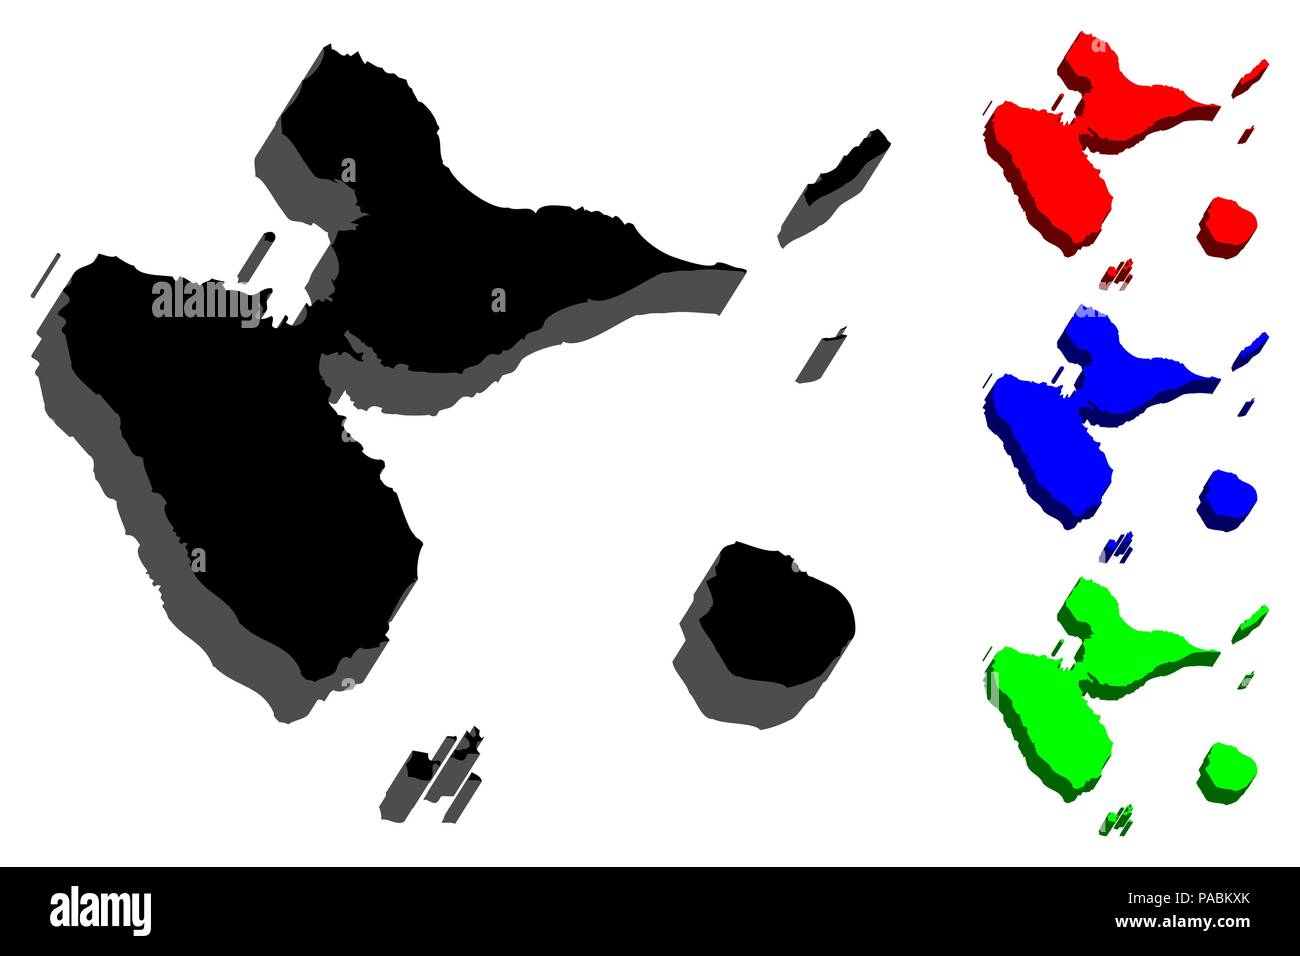 Mapa 3d De Guadalupe Isla De Francia Región Insular Negro Rojo Azul Y Verde Ilustración 2405